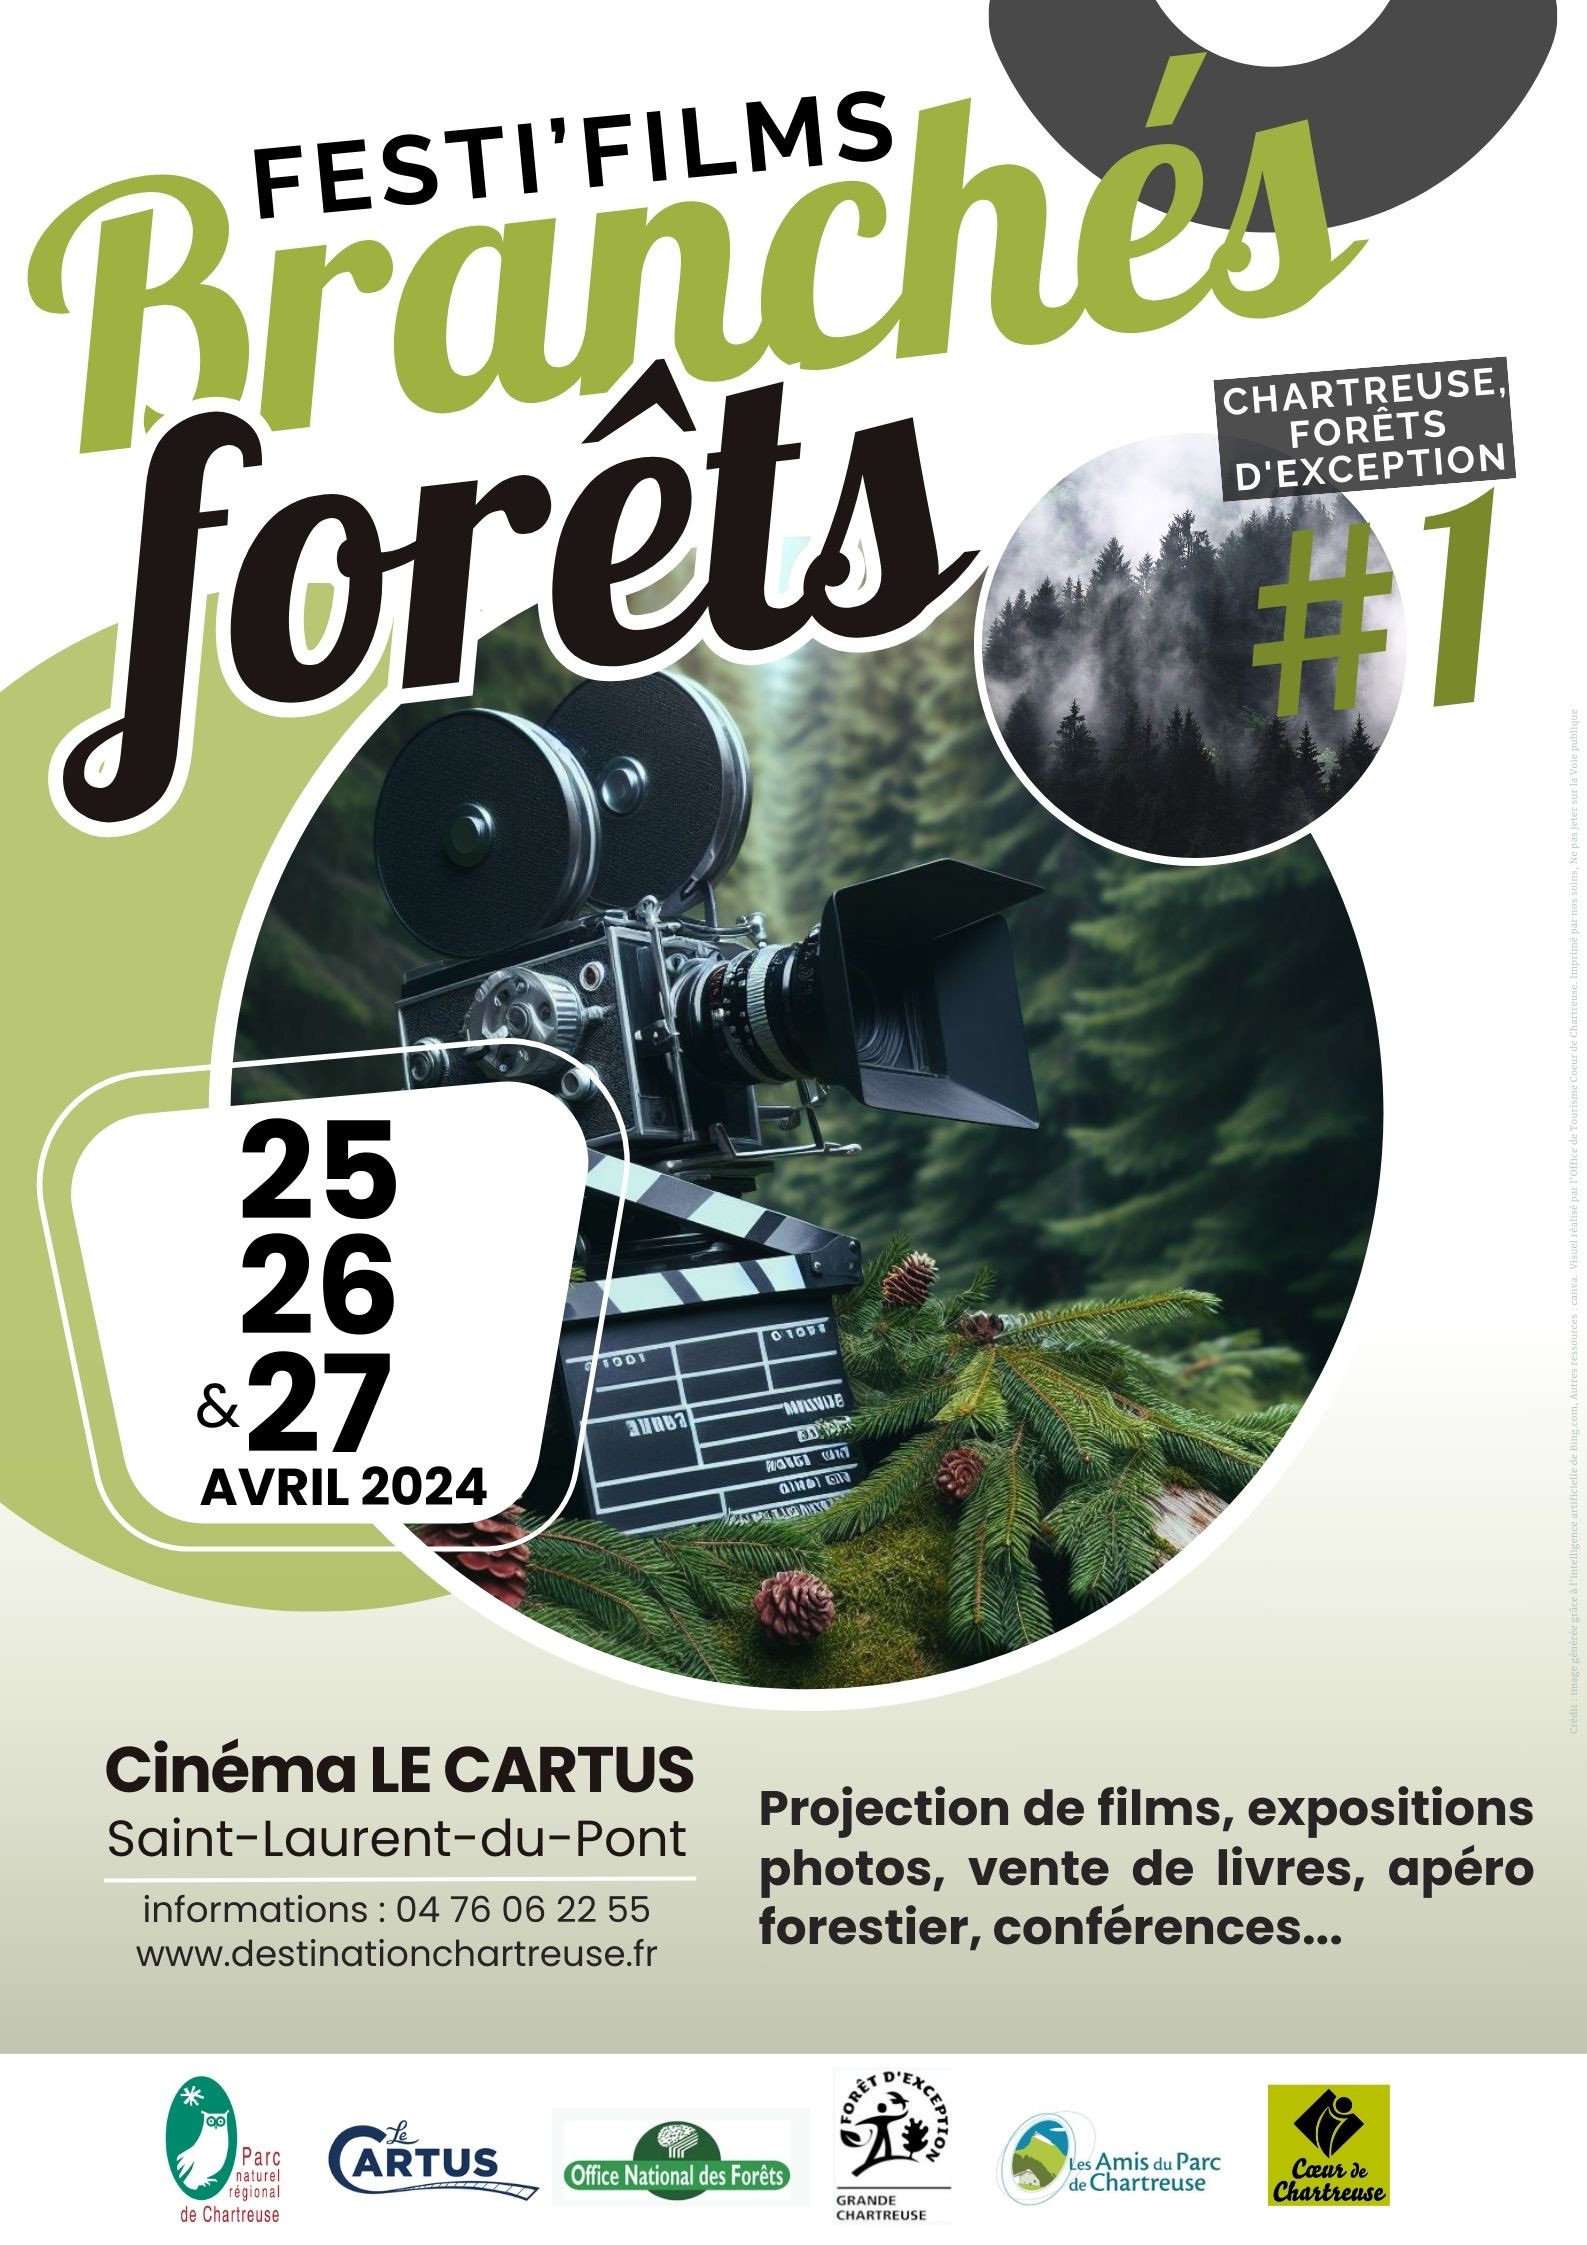 Festi'films branchés forêts : séance spécial jeunes